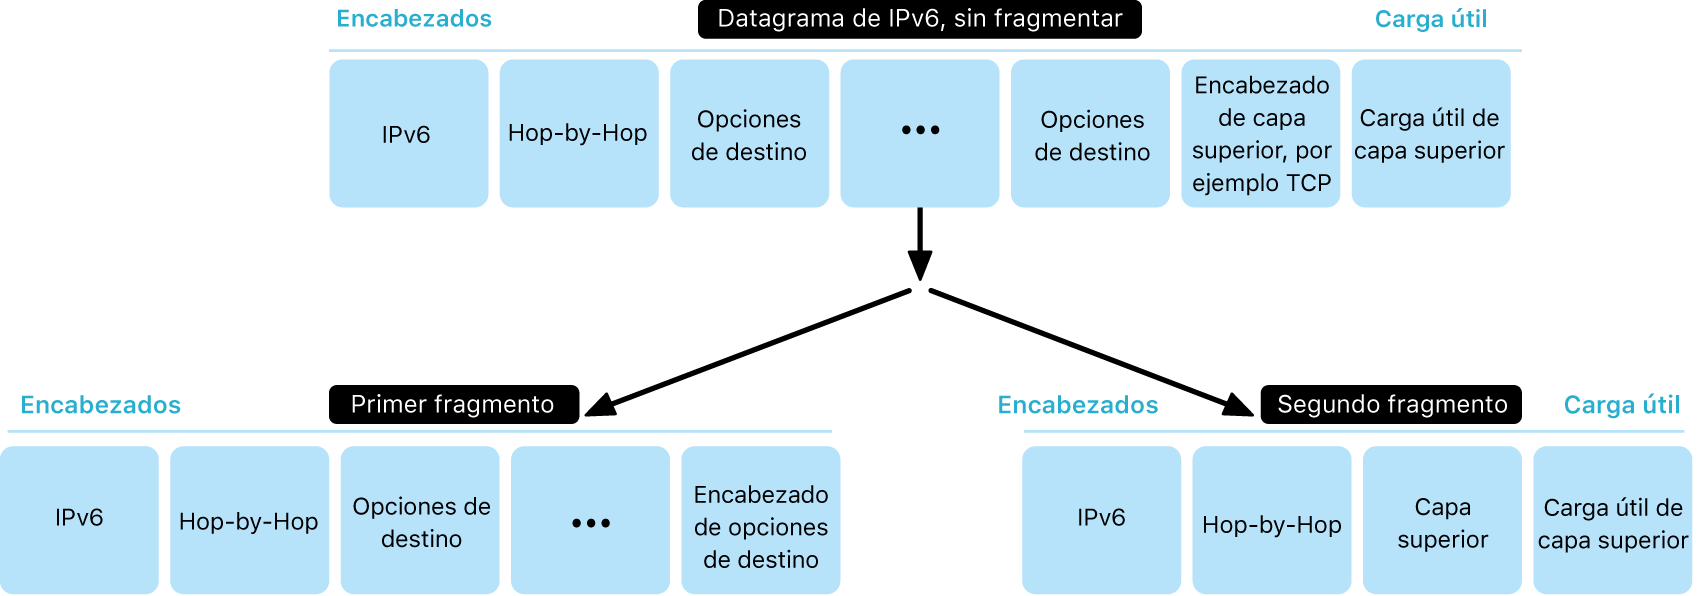 Un diagrama mostrando un datagrama del protocolo IPv6 en dos capas: sin fragmentar y, debajo, fragmentado.